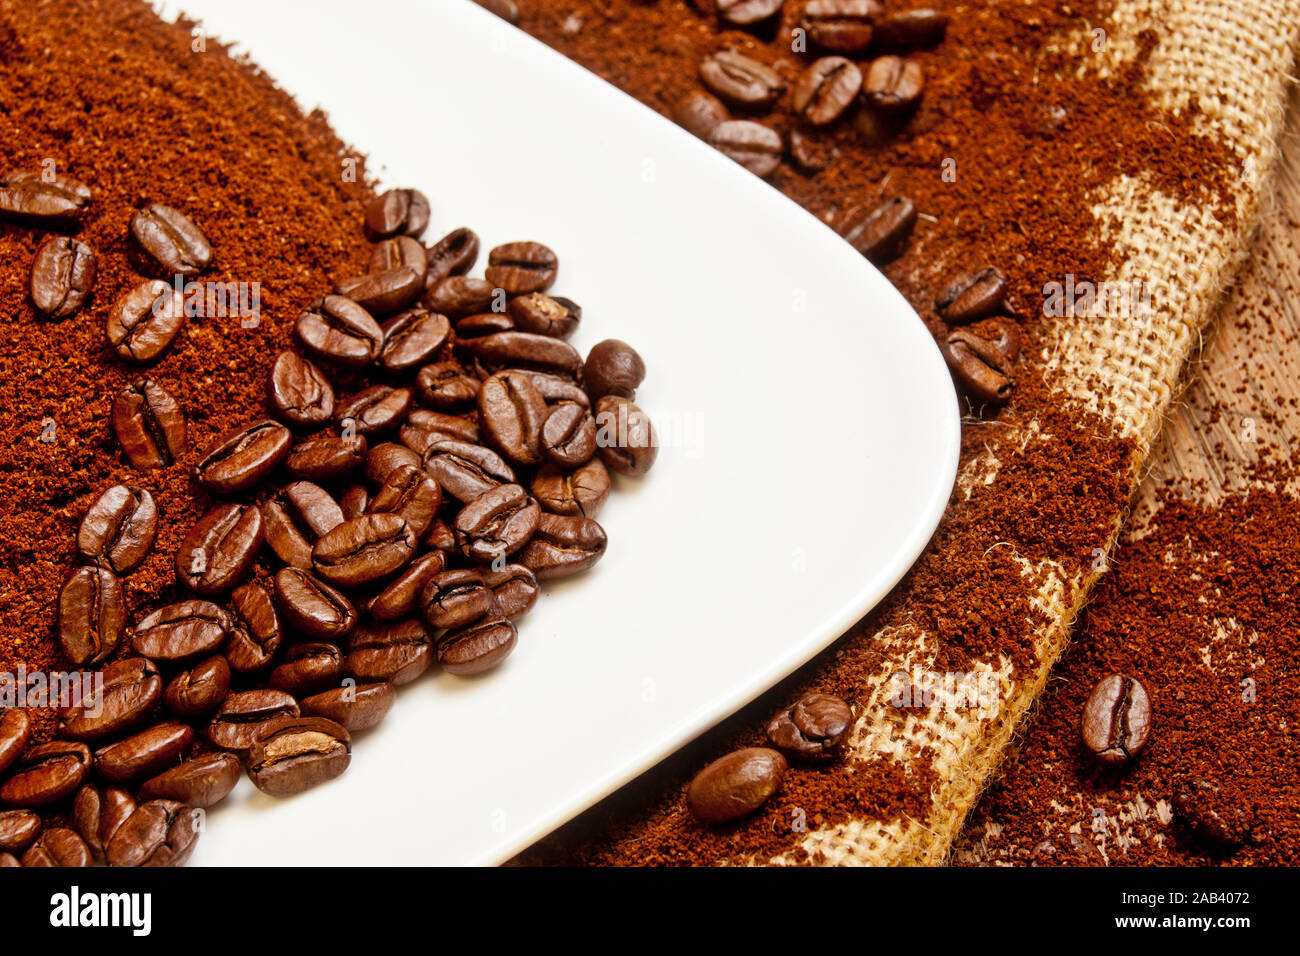 Eine Schale mit Kaffeepulver und gerösteten Kaffeebohnen |A bowl of coffee powder and roasted coffee beans| Stock Photo